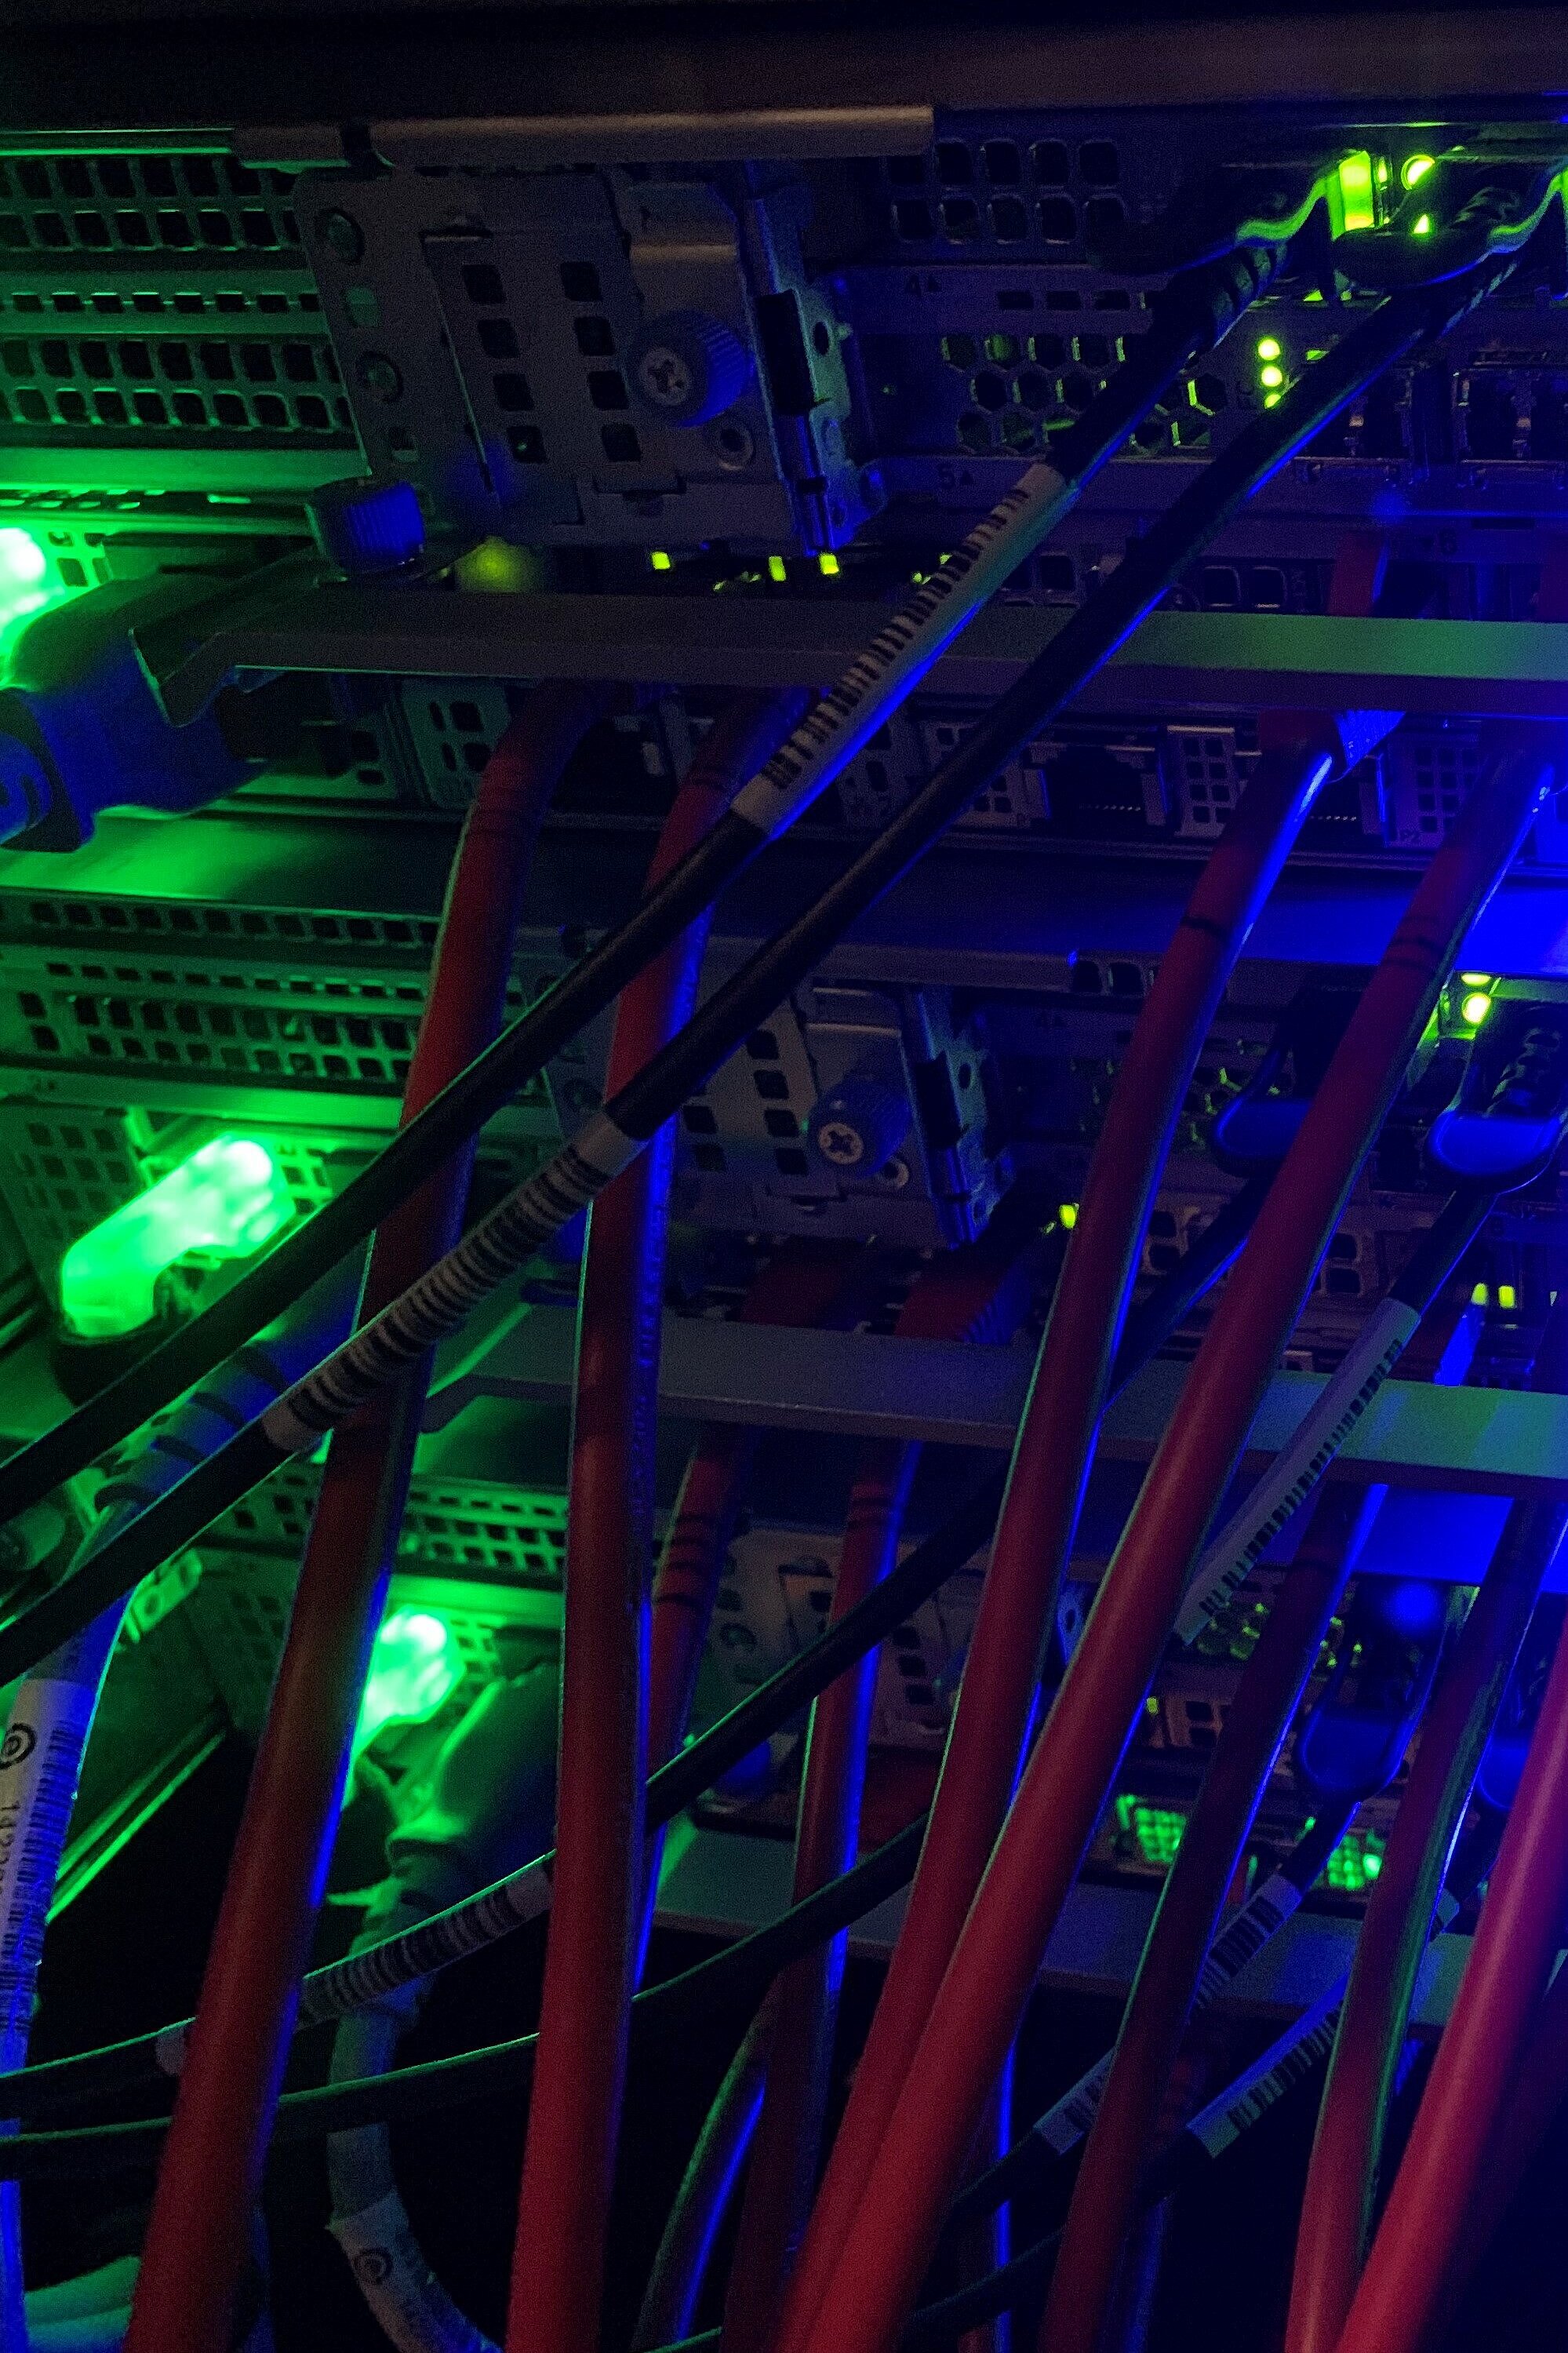 Foto: Lichter in grün und Blau von einem Server